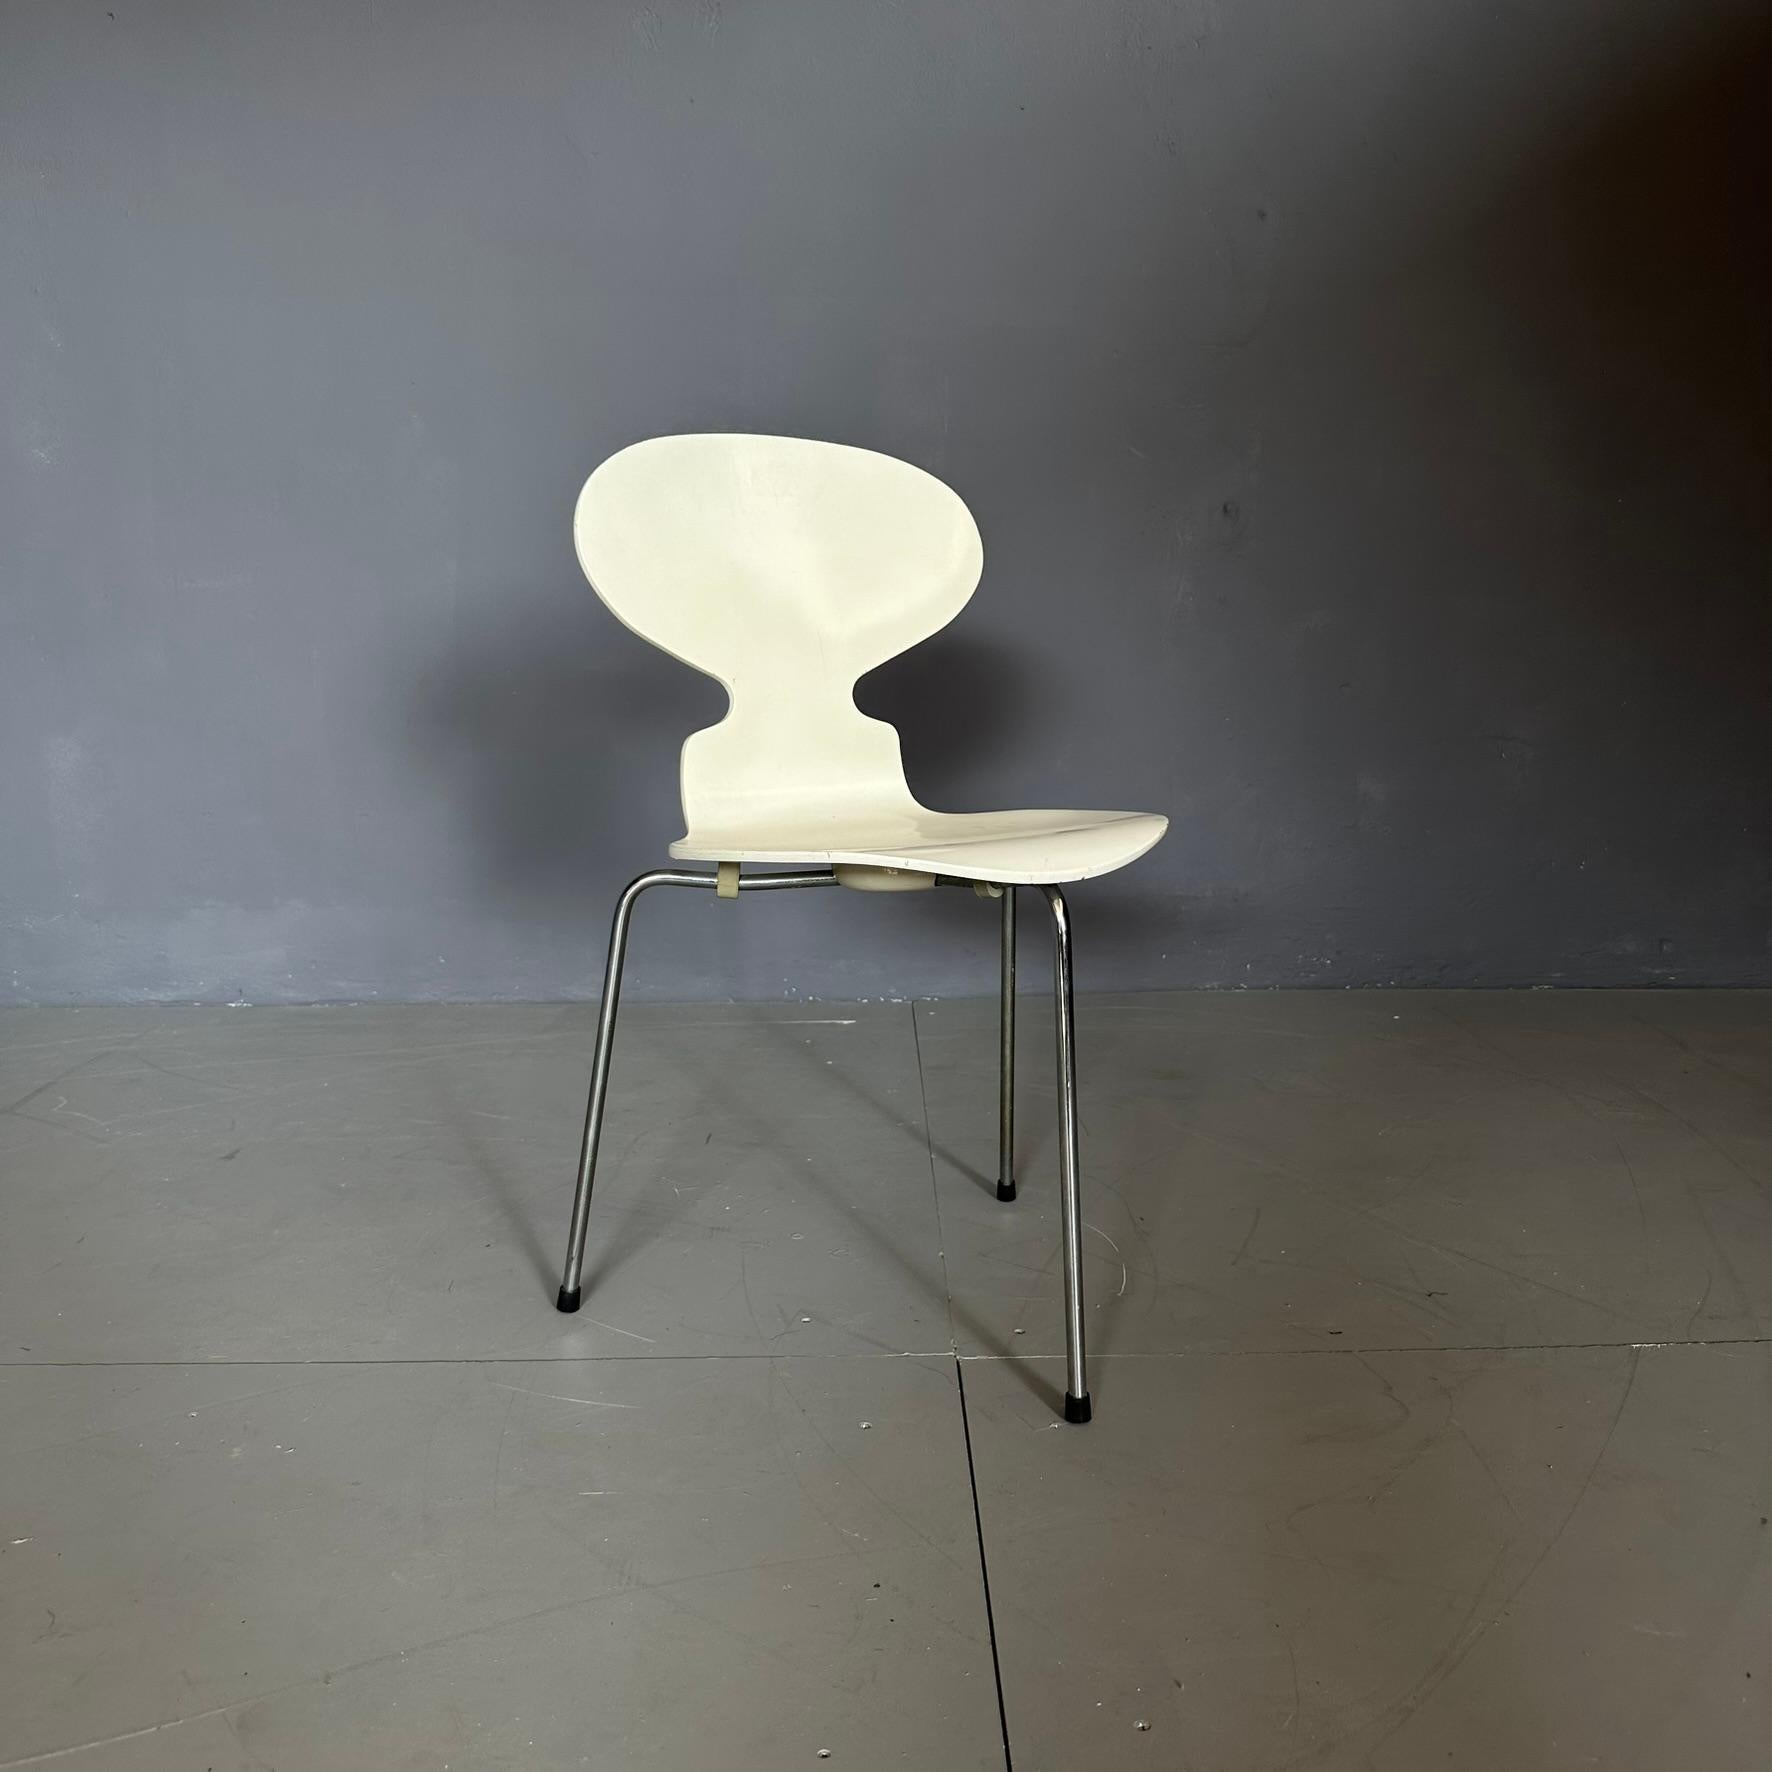 Chaise ANT 3100, design de Jacobsen Hansen pour Fritz, fabrication suédoise.
La chaise est fabriquée en bois courbé blanc avec trois pieds en métal.
La courbure du bois renforce la beauté et la particularité de ce modèle.
La marque de production est